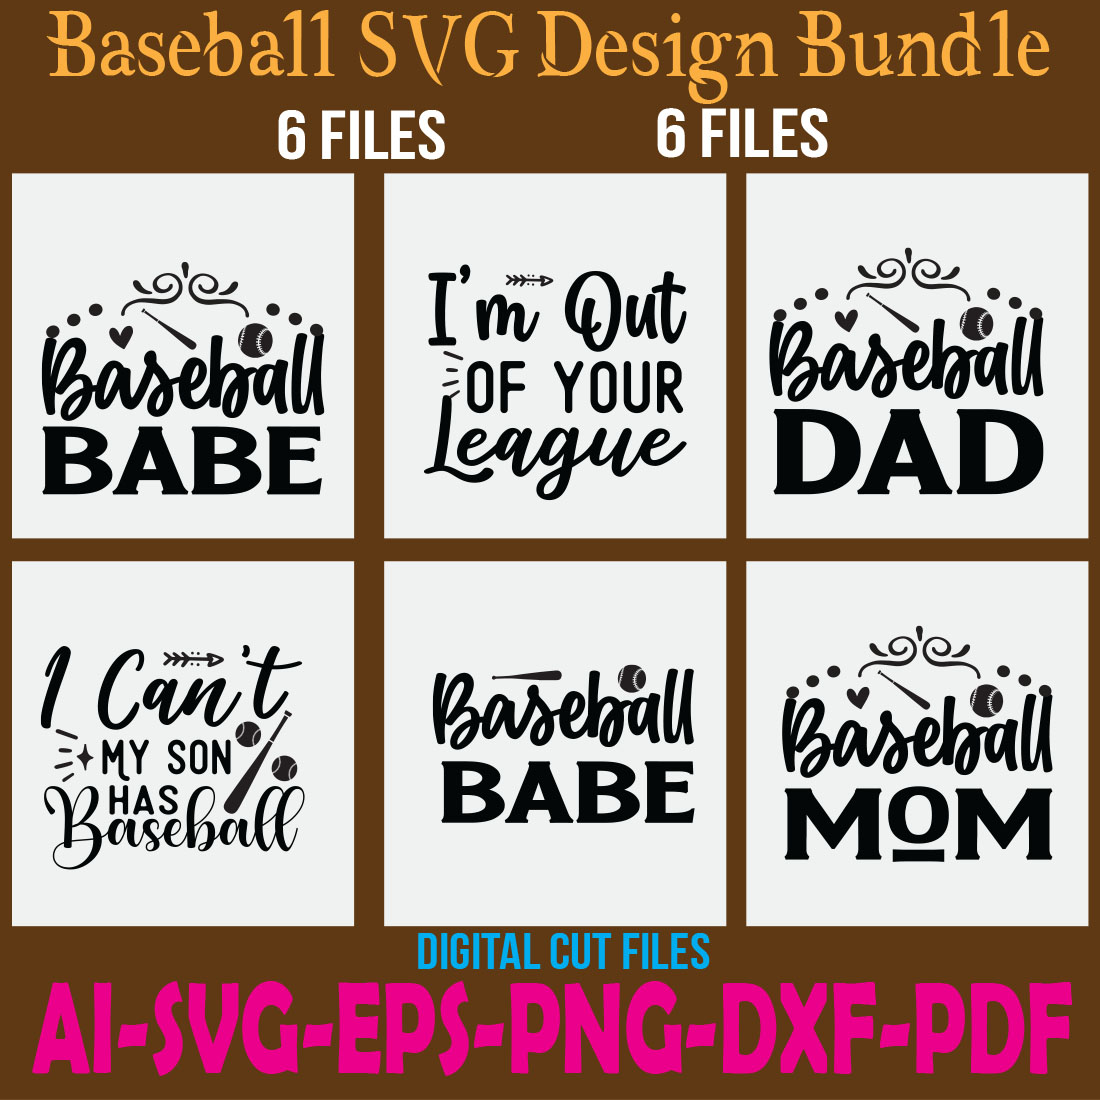 Baseball SVG Design Bundle cover image.